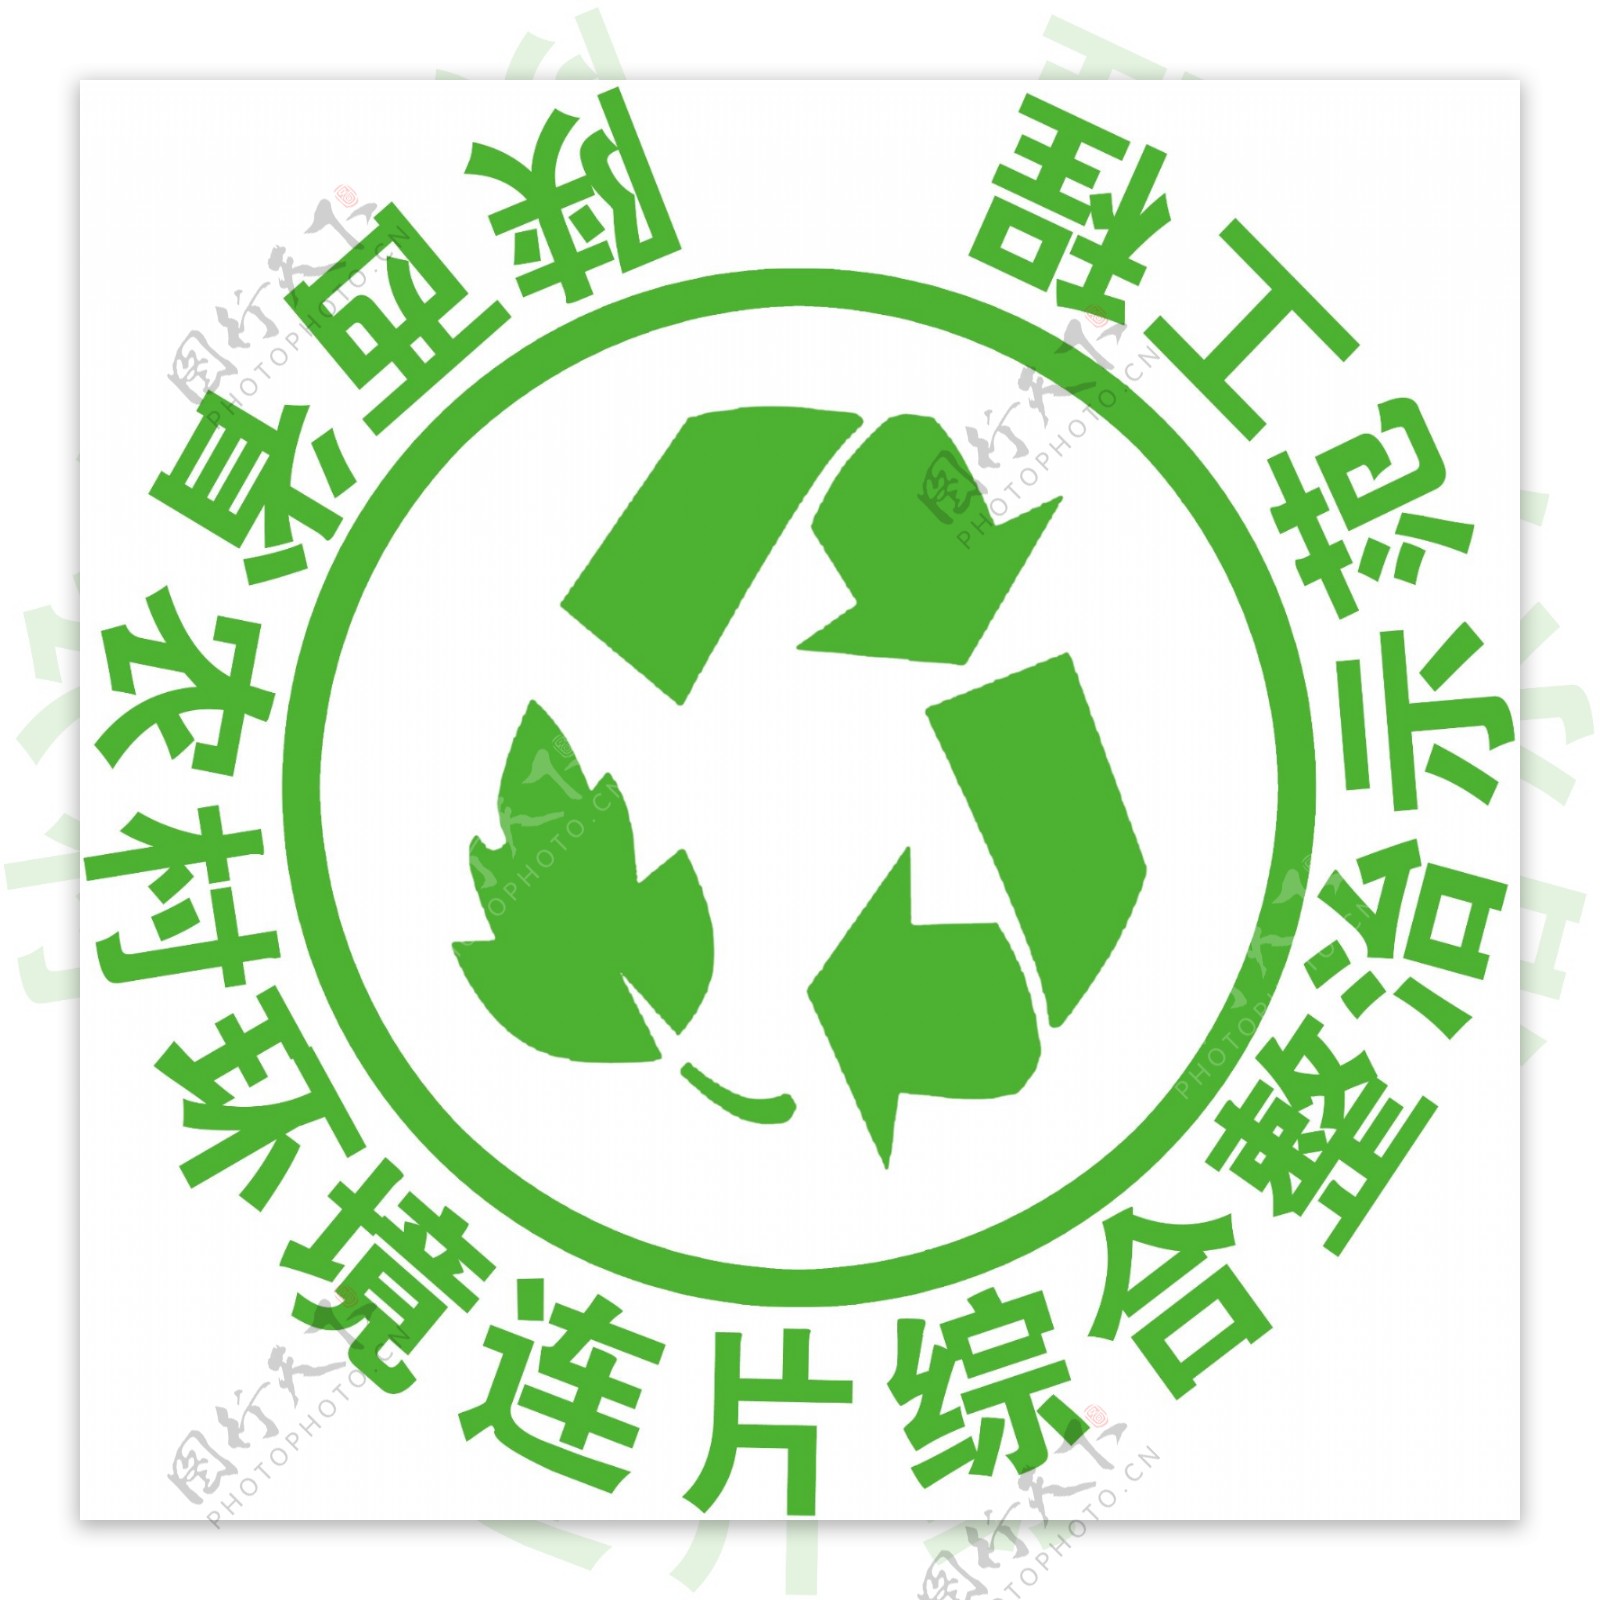 绿色环保标志矢量图logo素材_蛙客网viwik.com